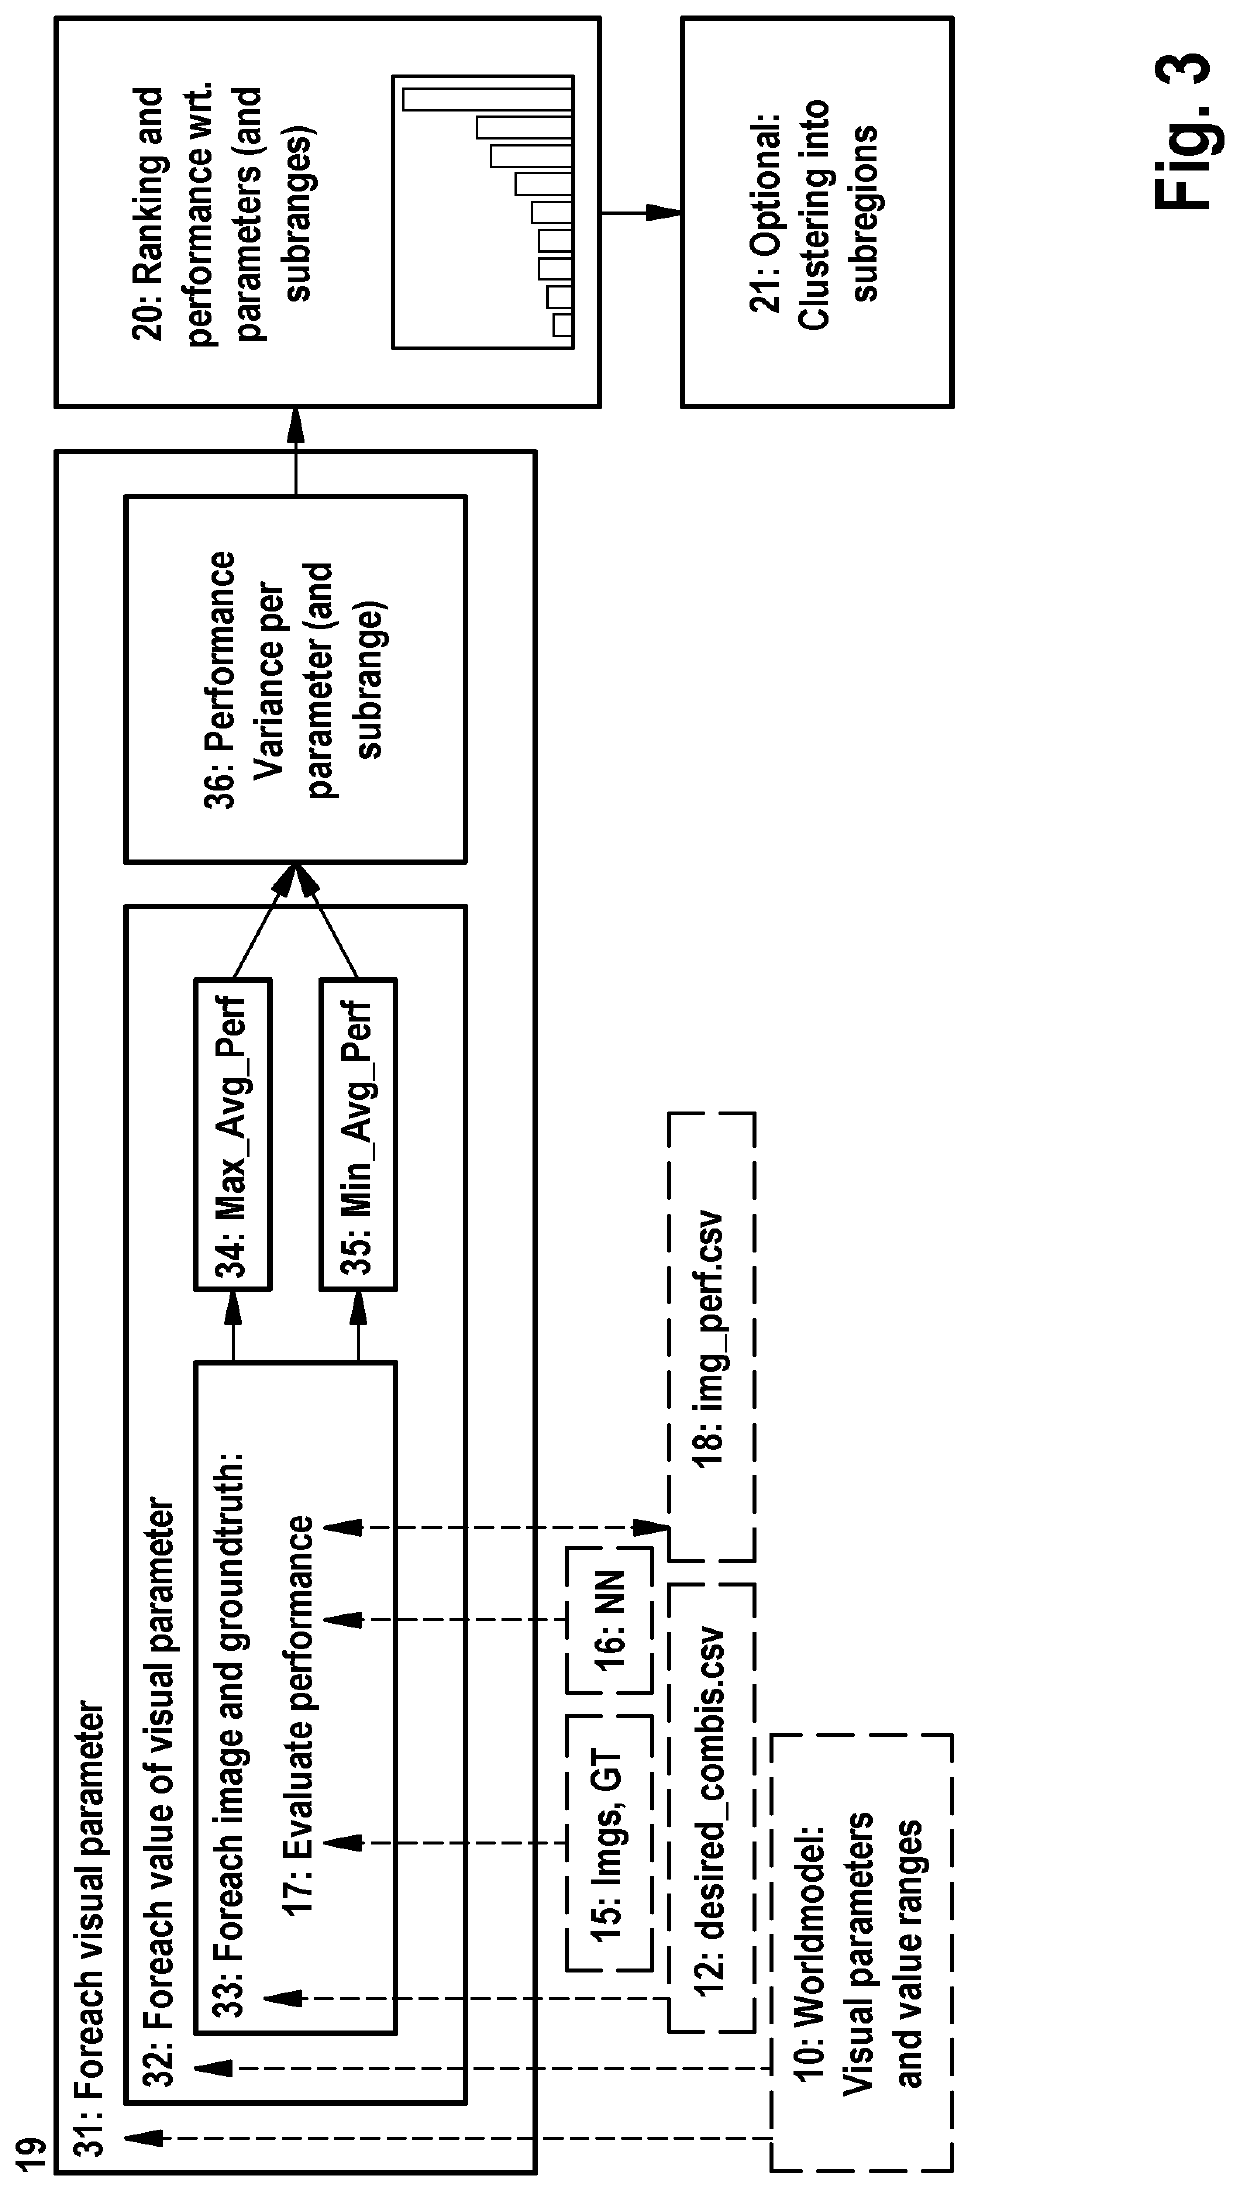 Modifying parameter sets characterising a computer vision model